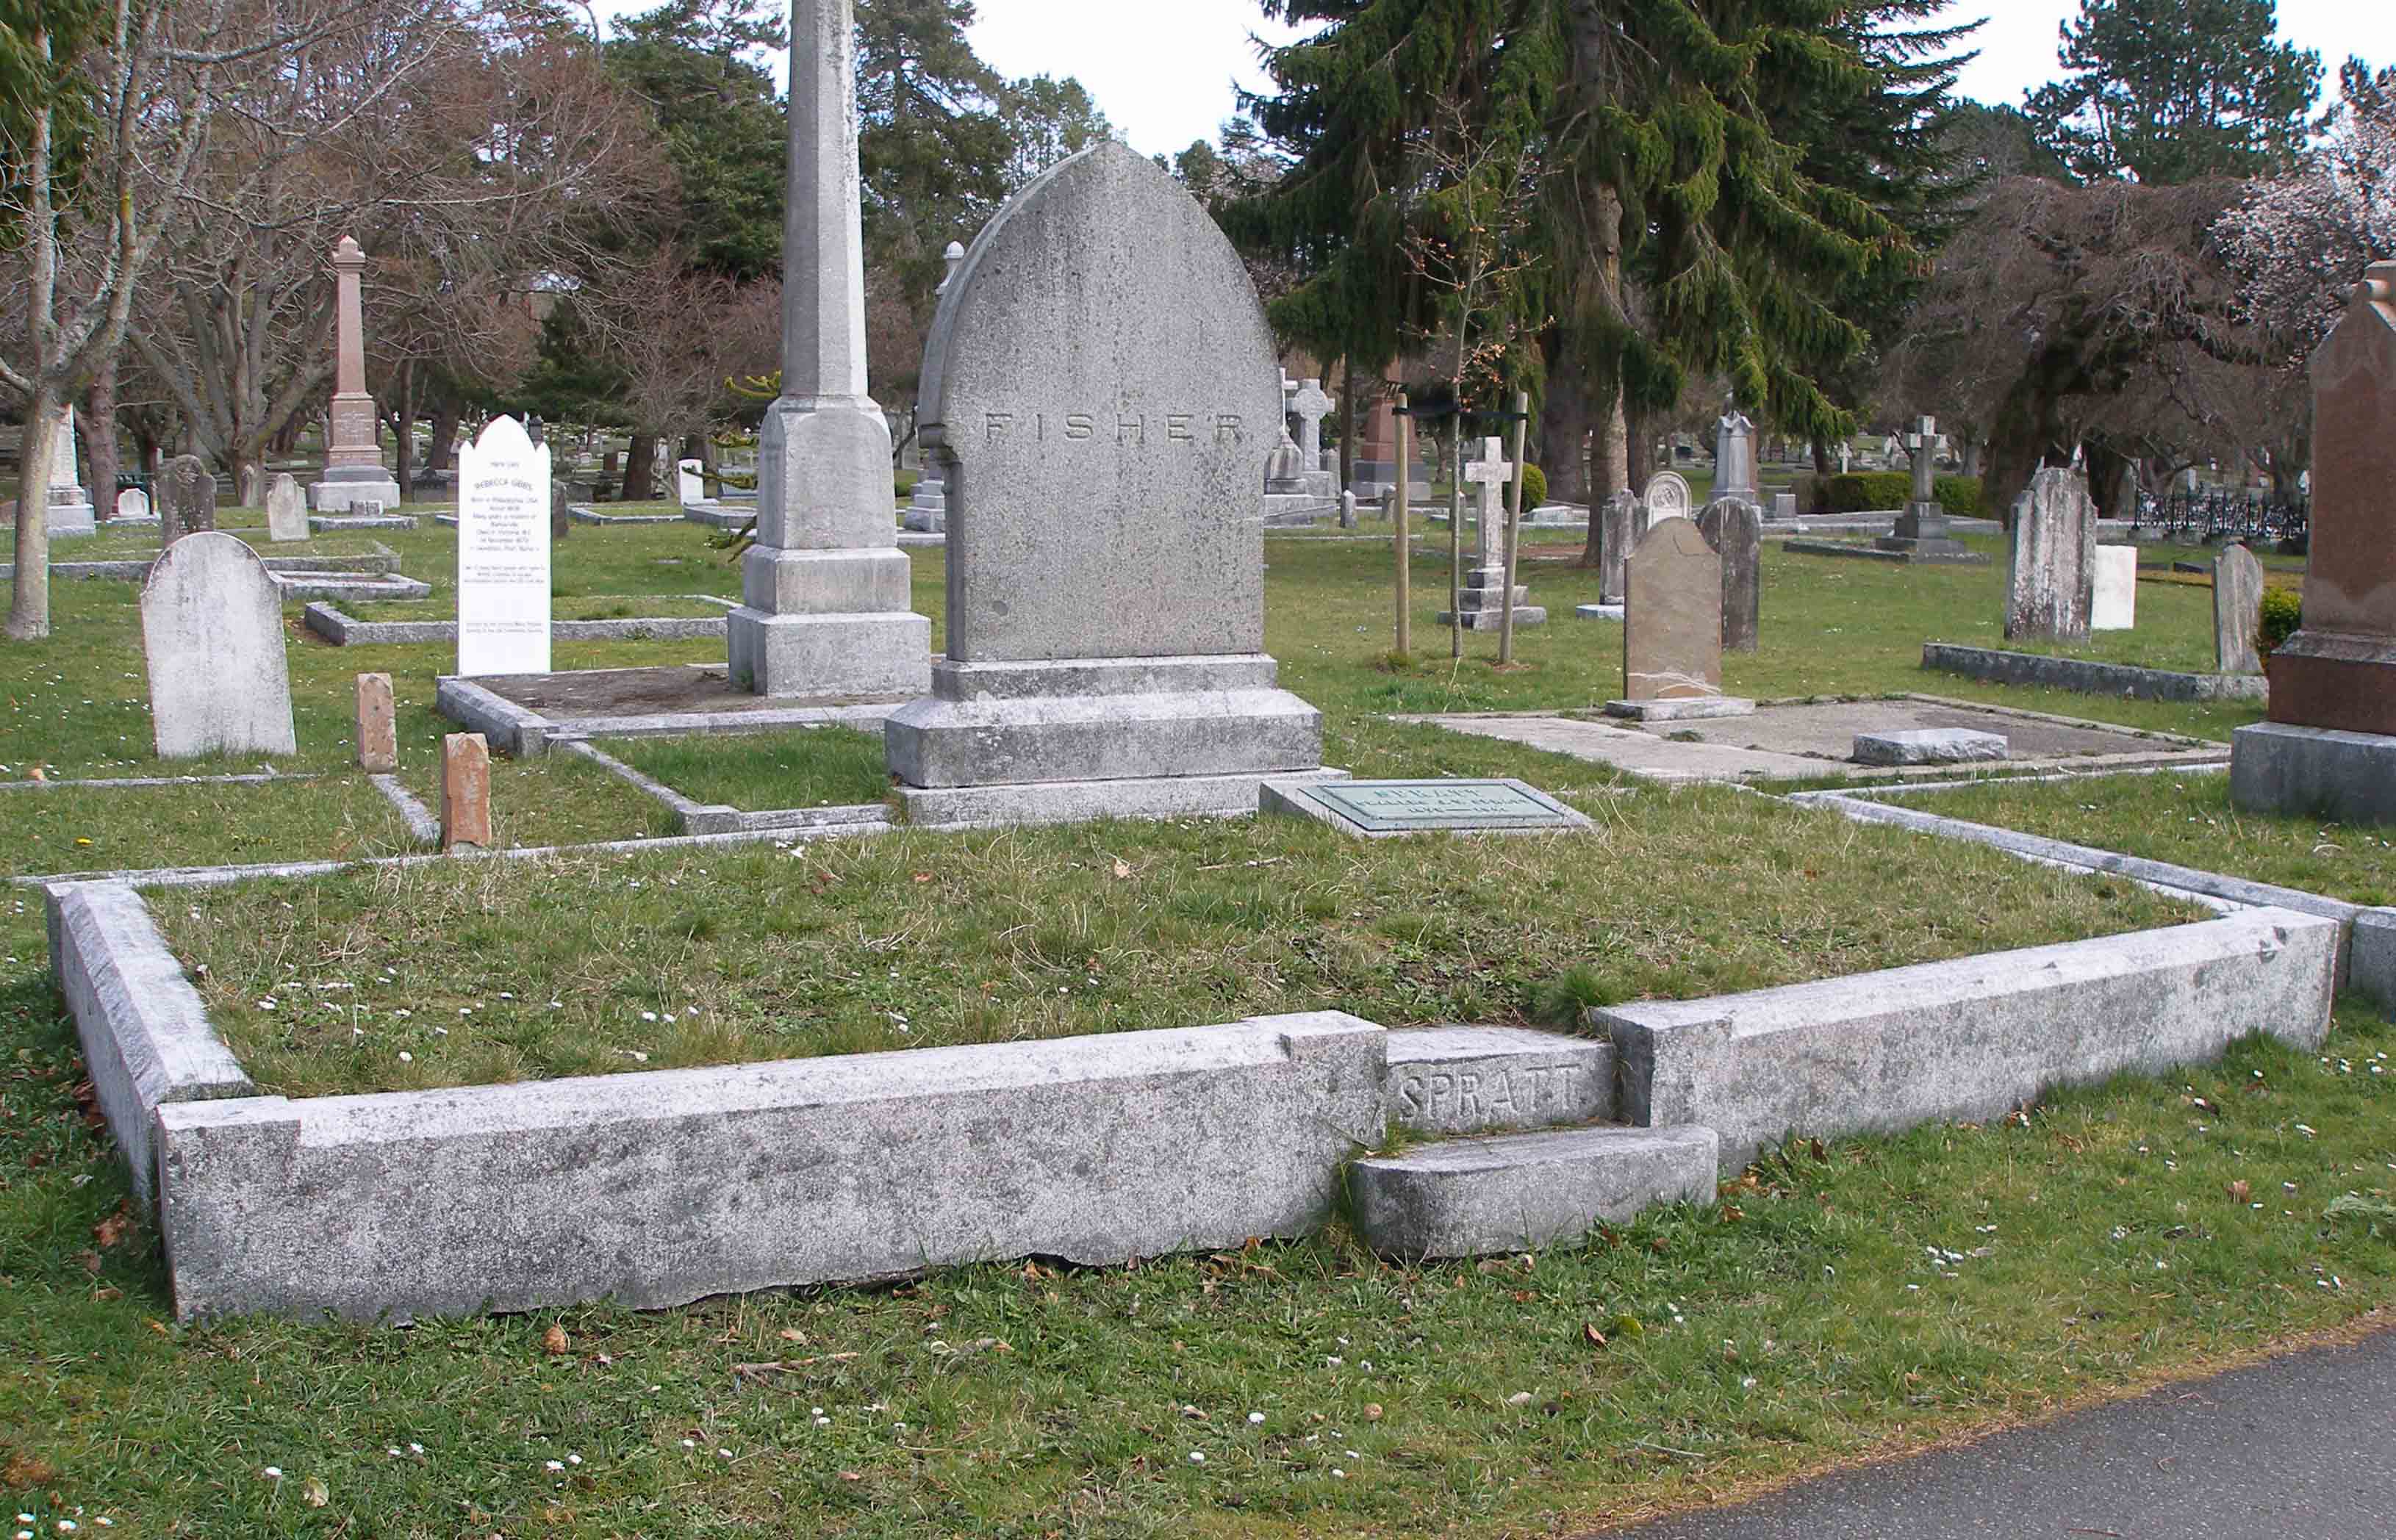 Joseph Spratt family tomb, Ross Bay Cemetery